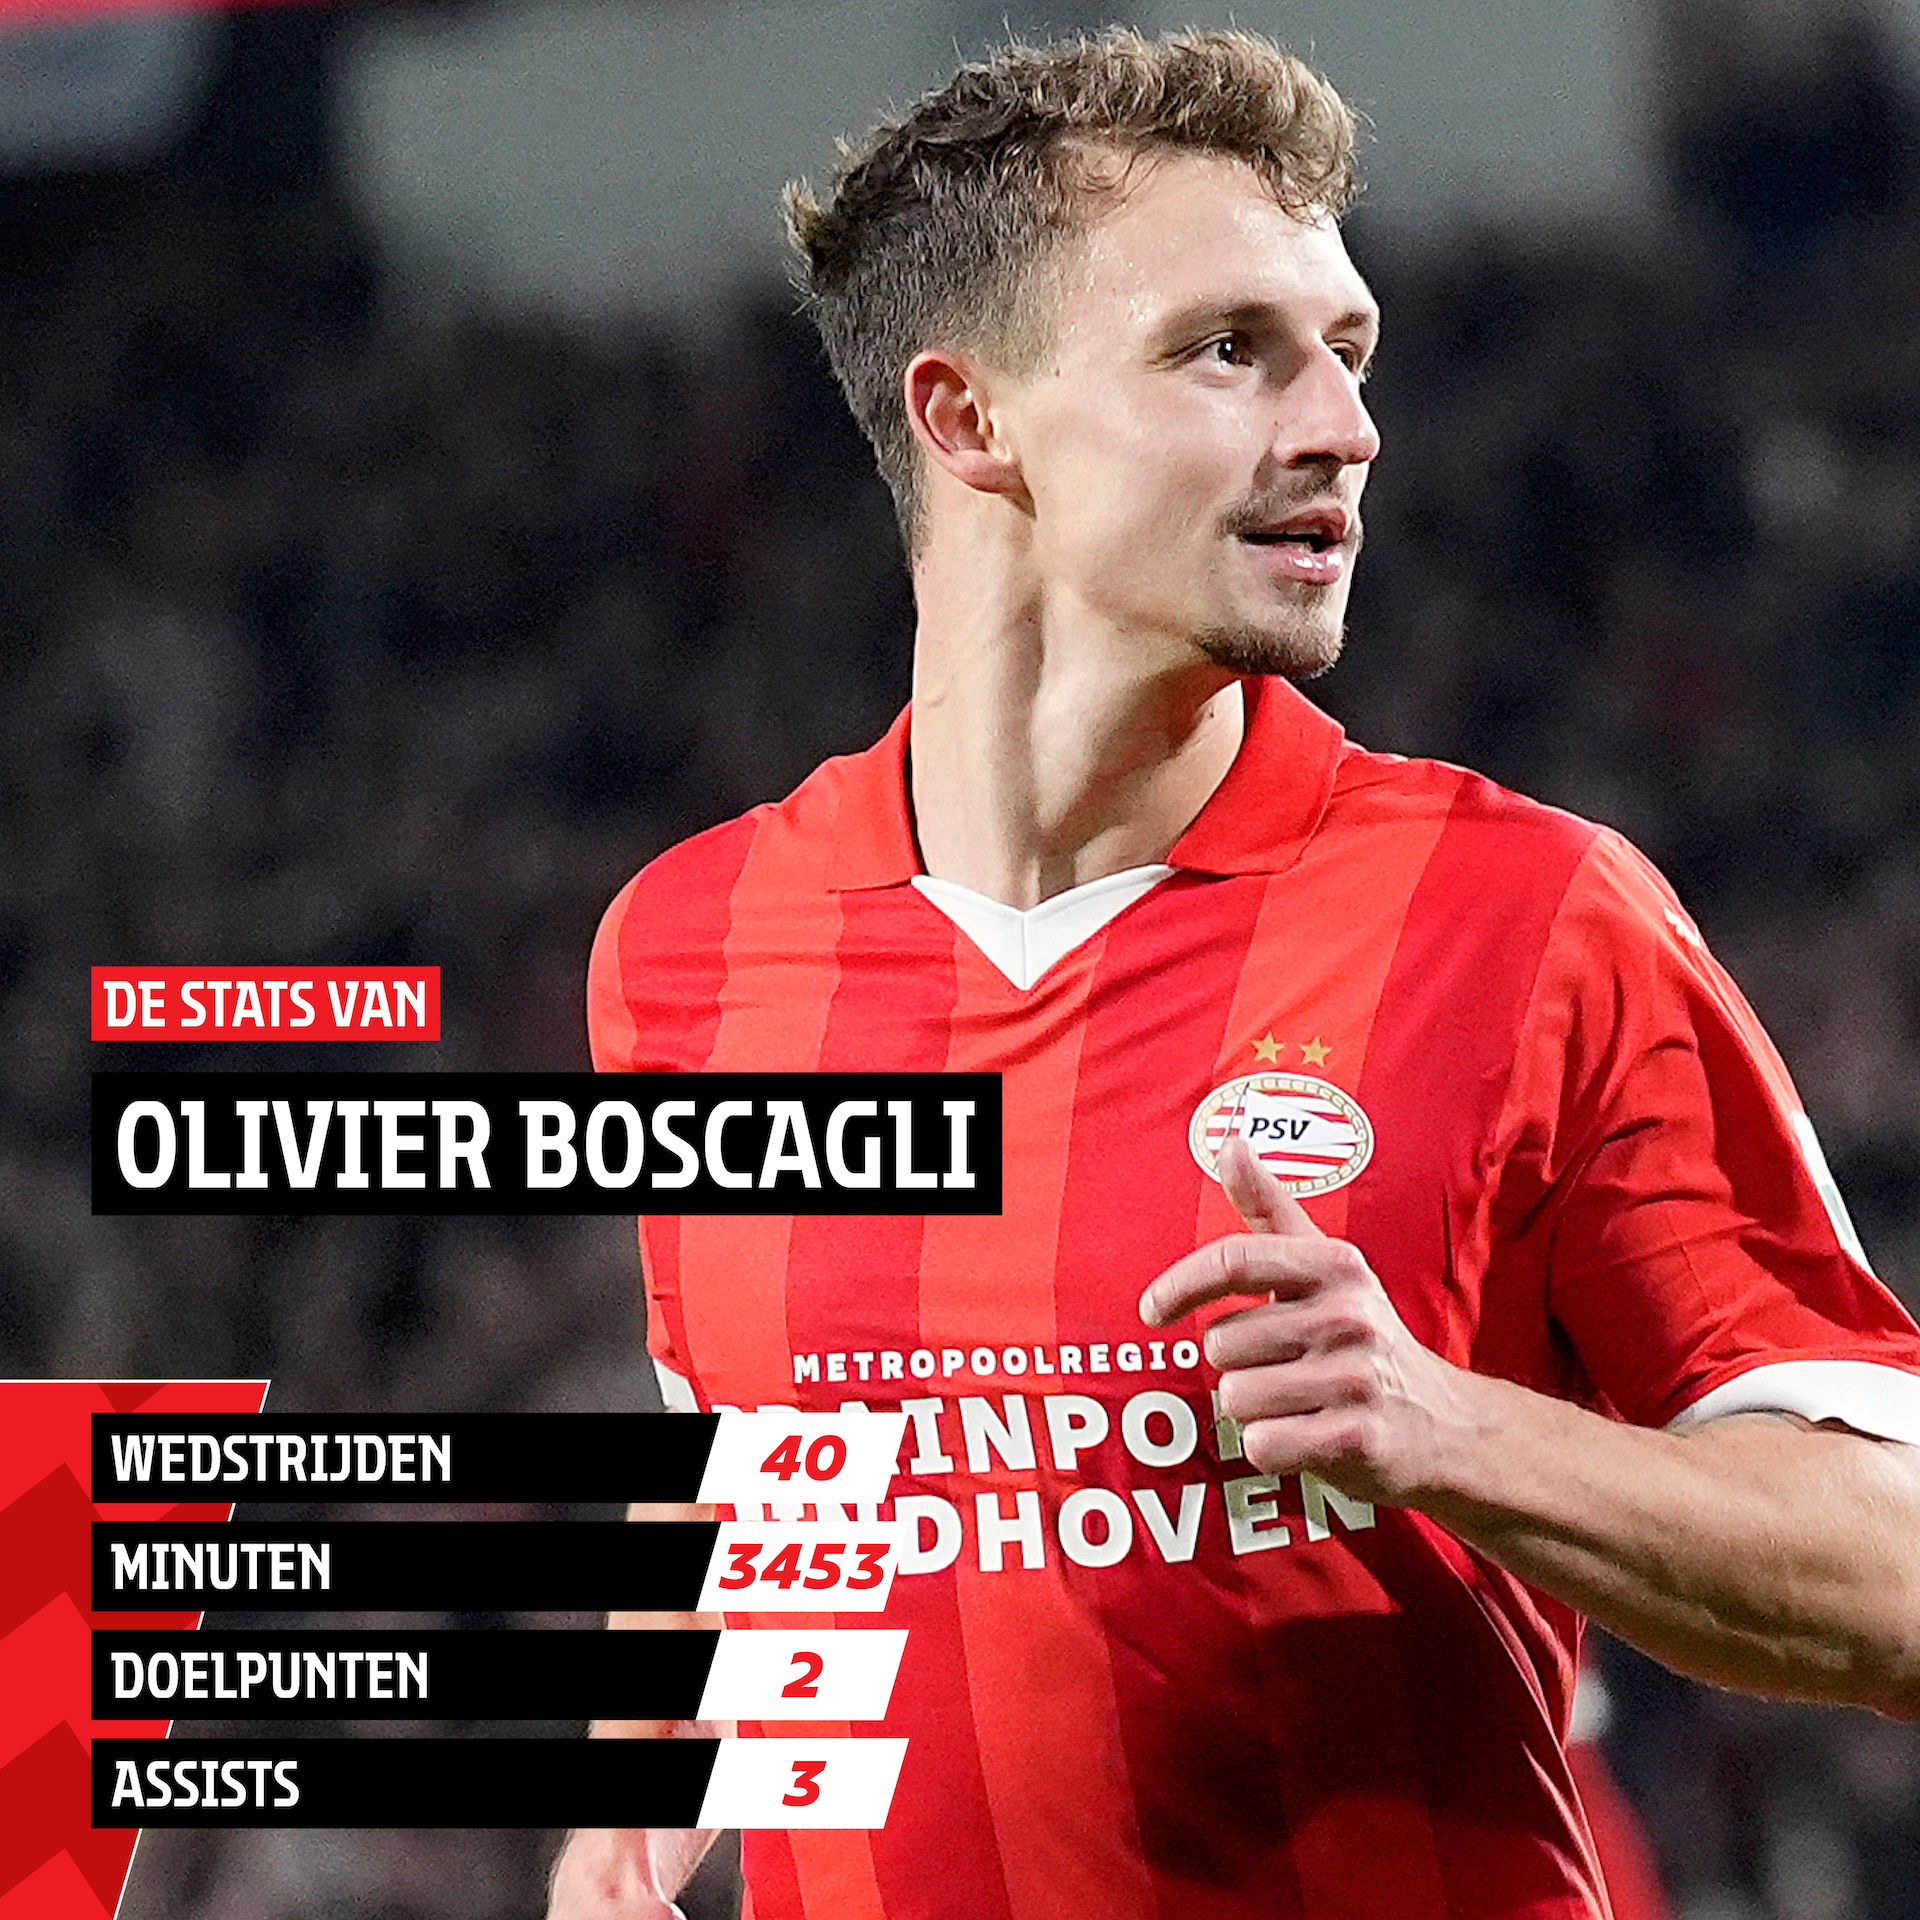 Olivier Boscagli maakte dit seizoen de meeste minuten van alle veldspelers 